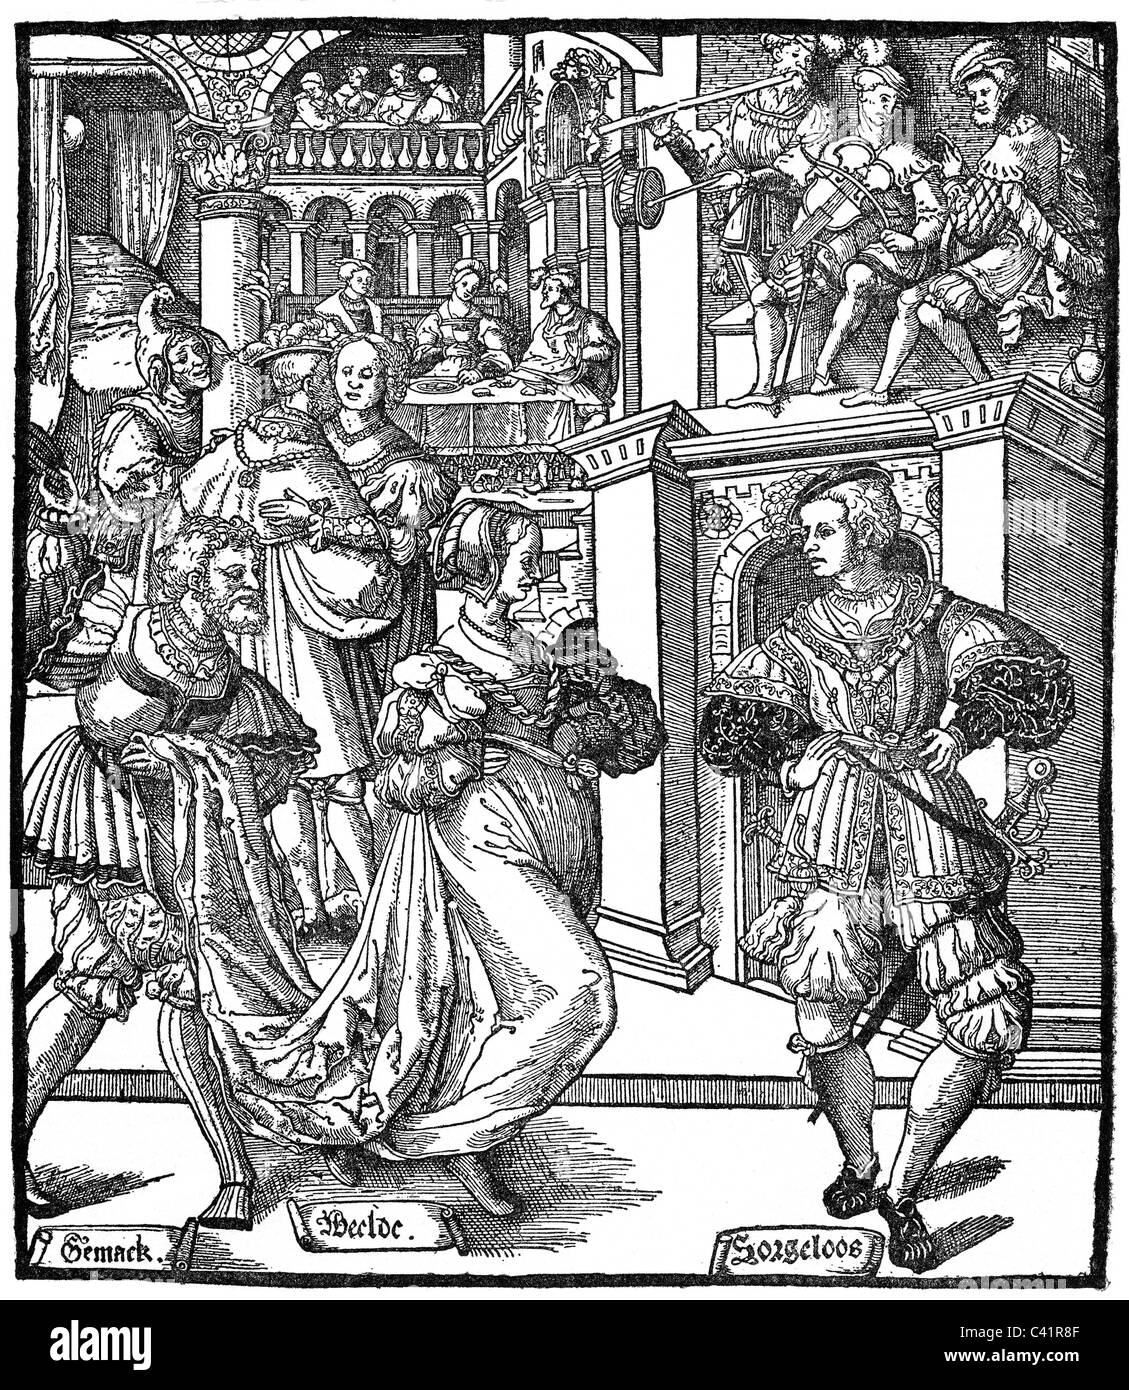 Festlichkeiten, Ball, Bandsman spielt für den Tanz, Holzschnitt von Cornelis Anthoniszoon, Niederlande, 1. Hälfte 16. Jahrhundert, Zusatzrechte-Clearences-nicht vorhanden Stockfoto